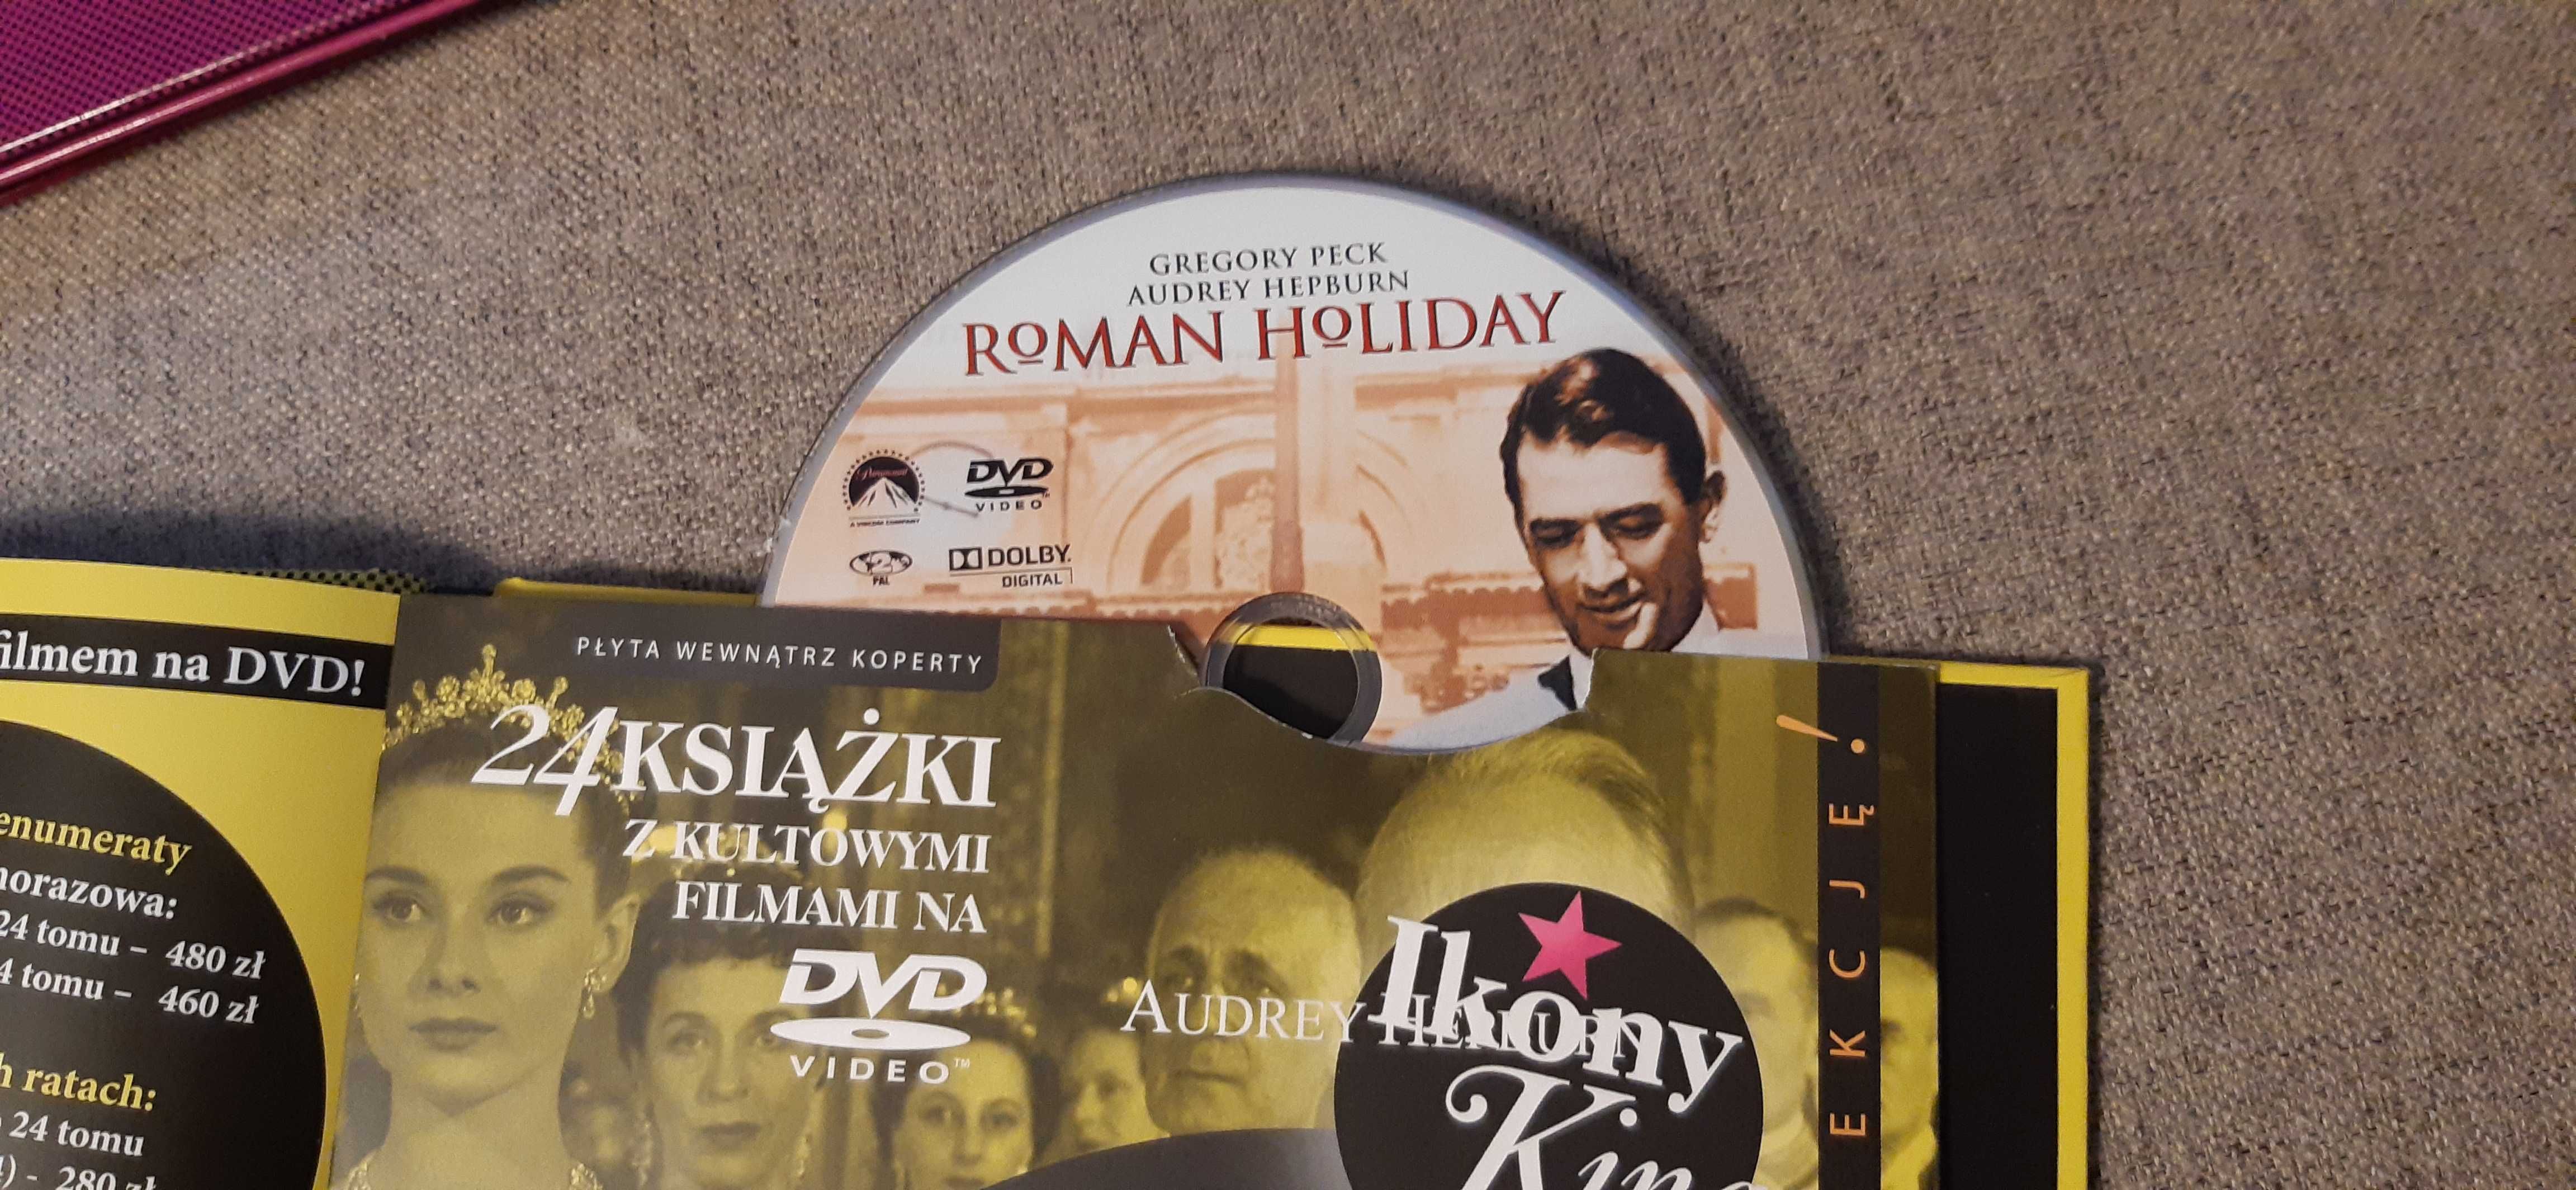 dvd stare kino rzymskie wakacje ekskluzywne wydanie